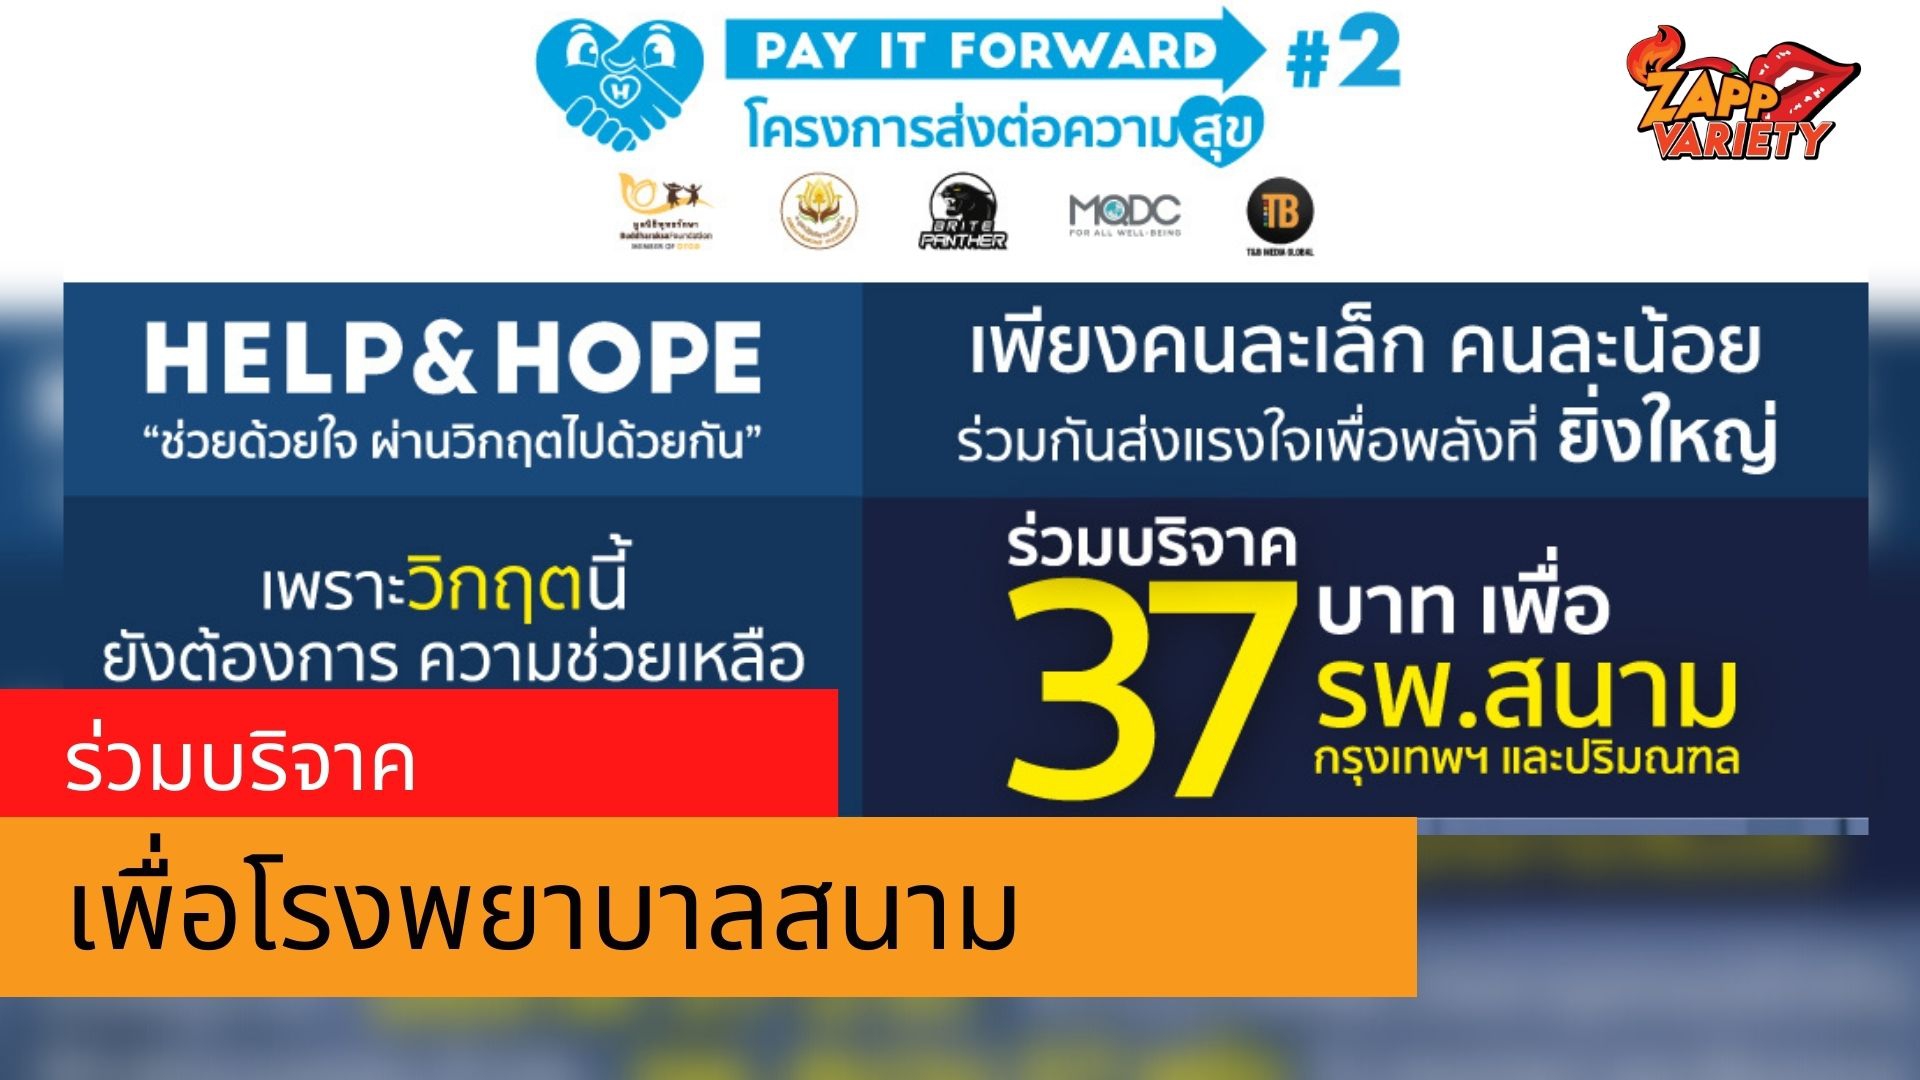 Pay It Forward #2 เชิญร่วมบริจาคช่วยโรงพยาบาลสนาม 37 แห่ง สู้ภัยโควิด-19